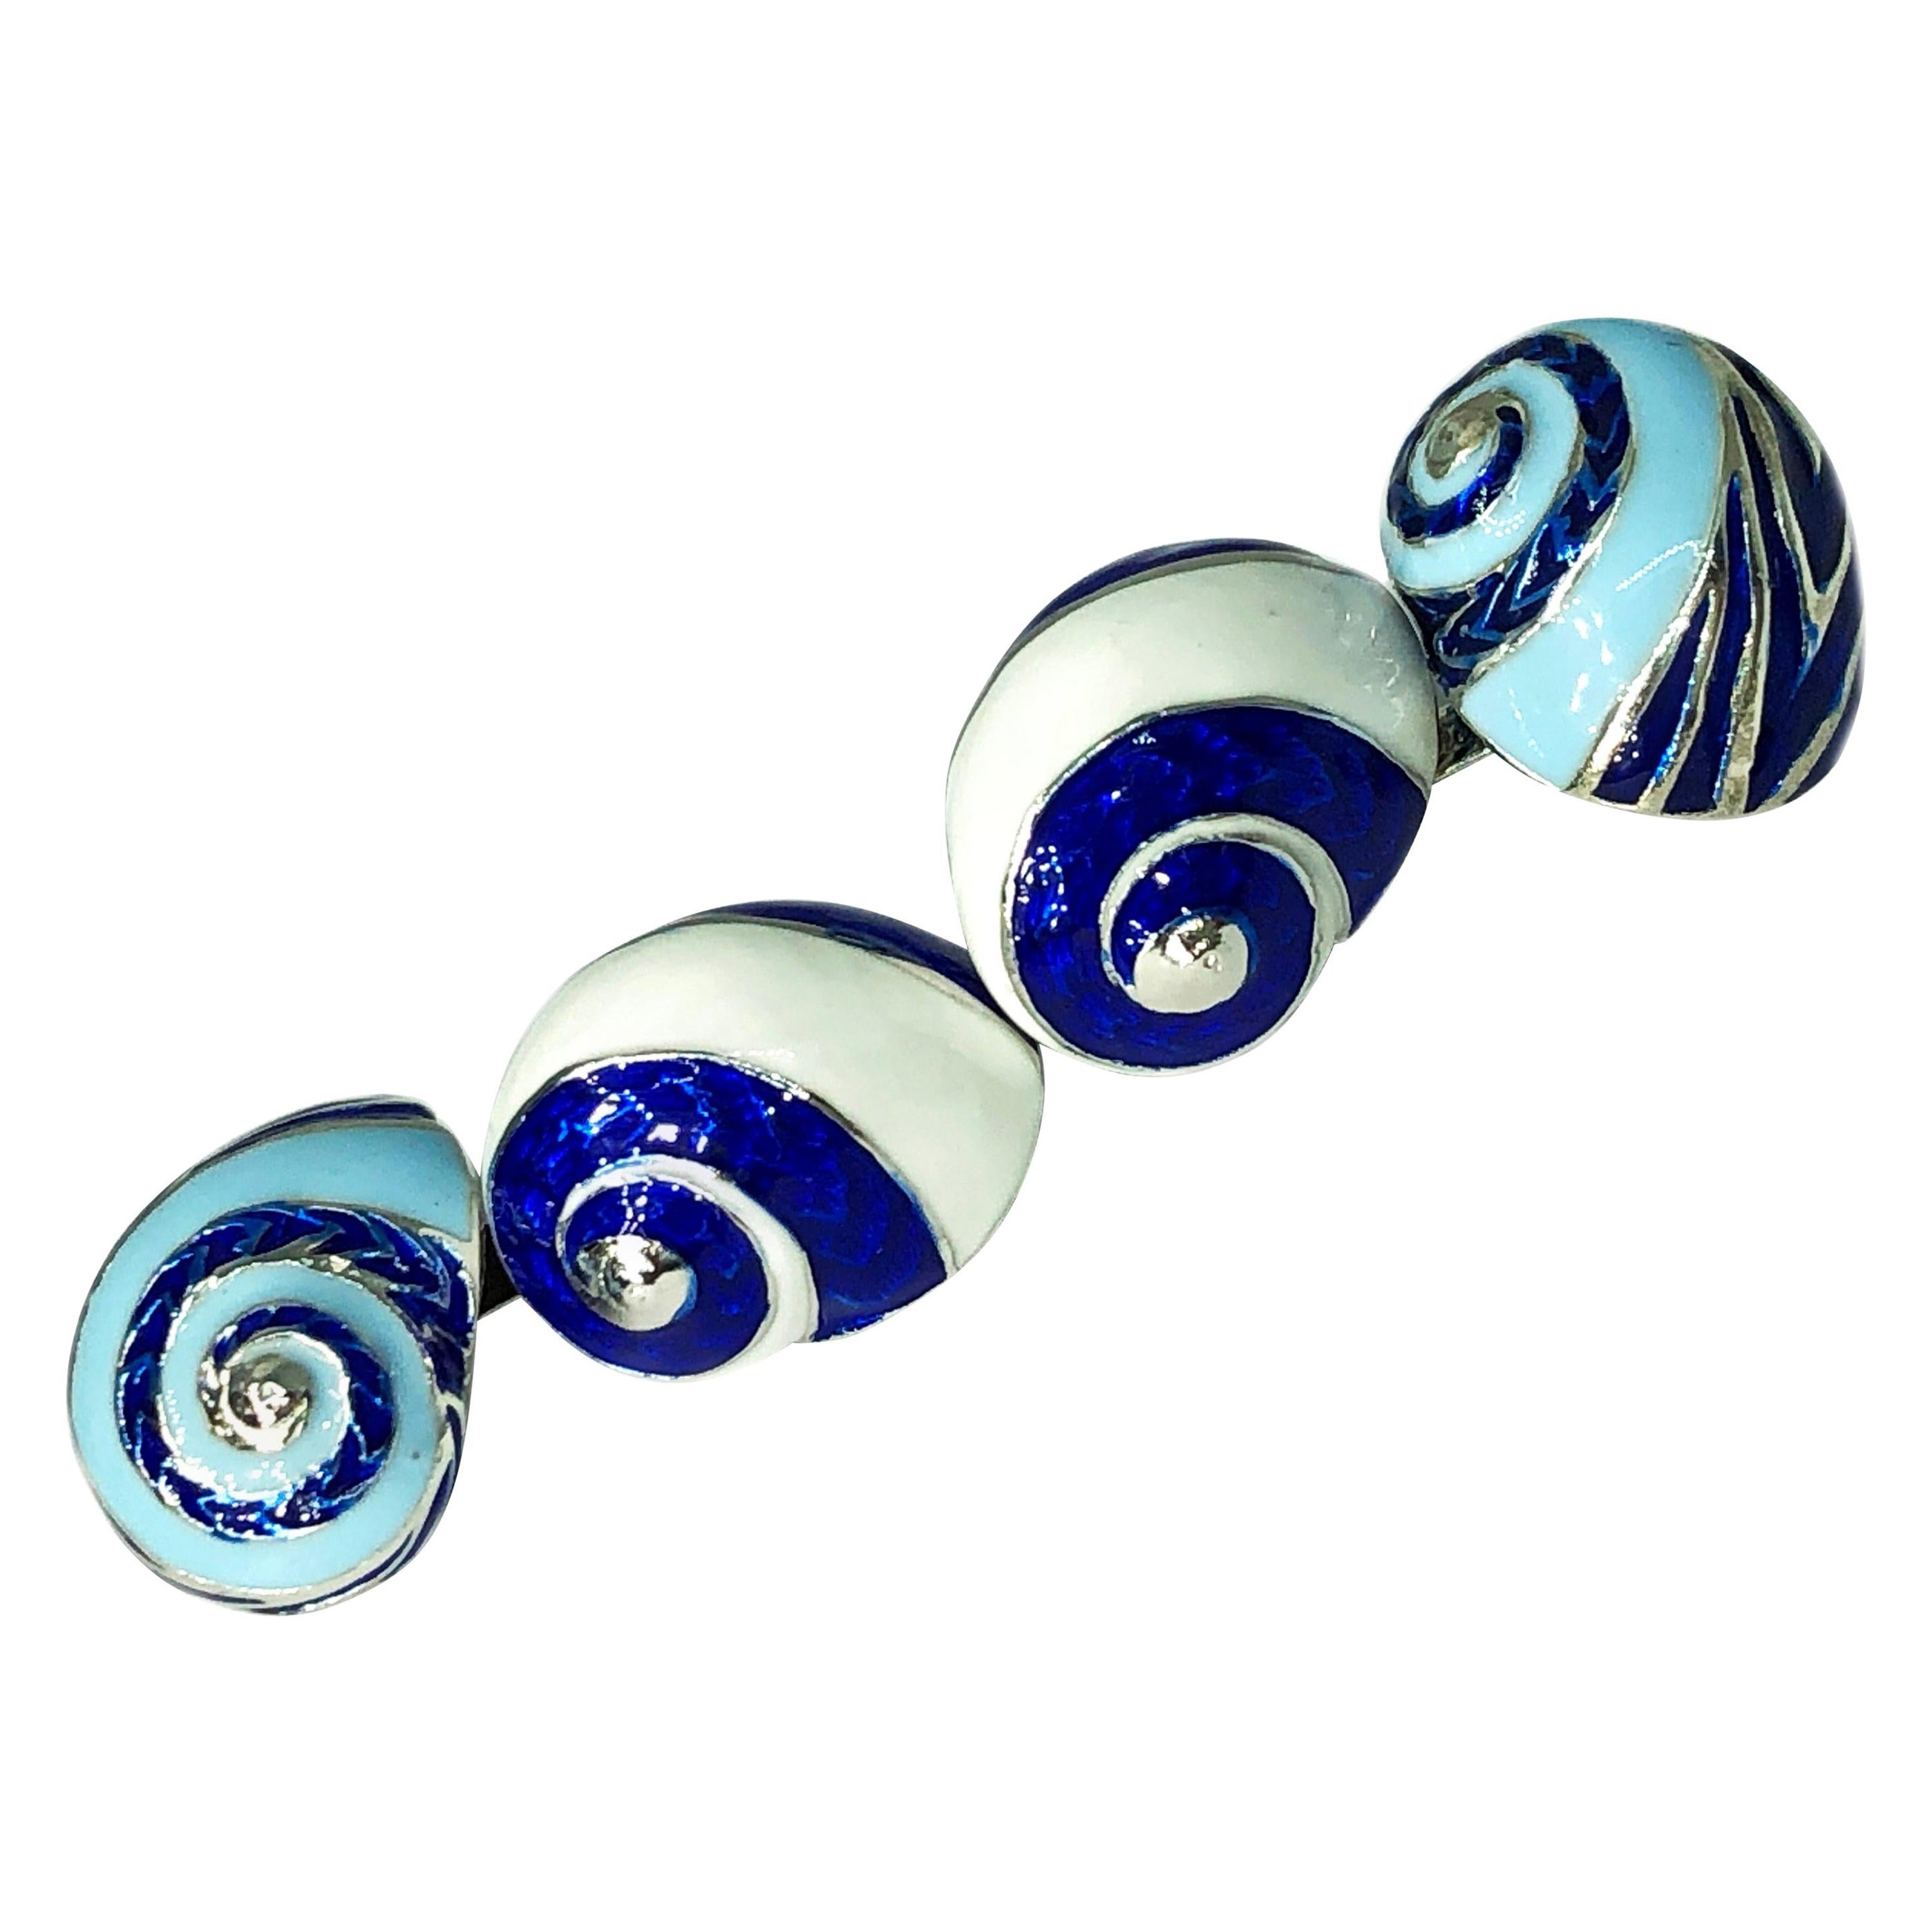 Berca Manschettenknöpfe in Muschelform aus Sterlingsilber in Blau, Weiß und Hellblau emailliert